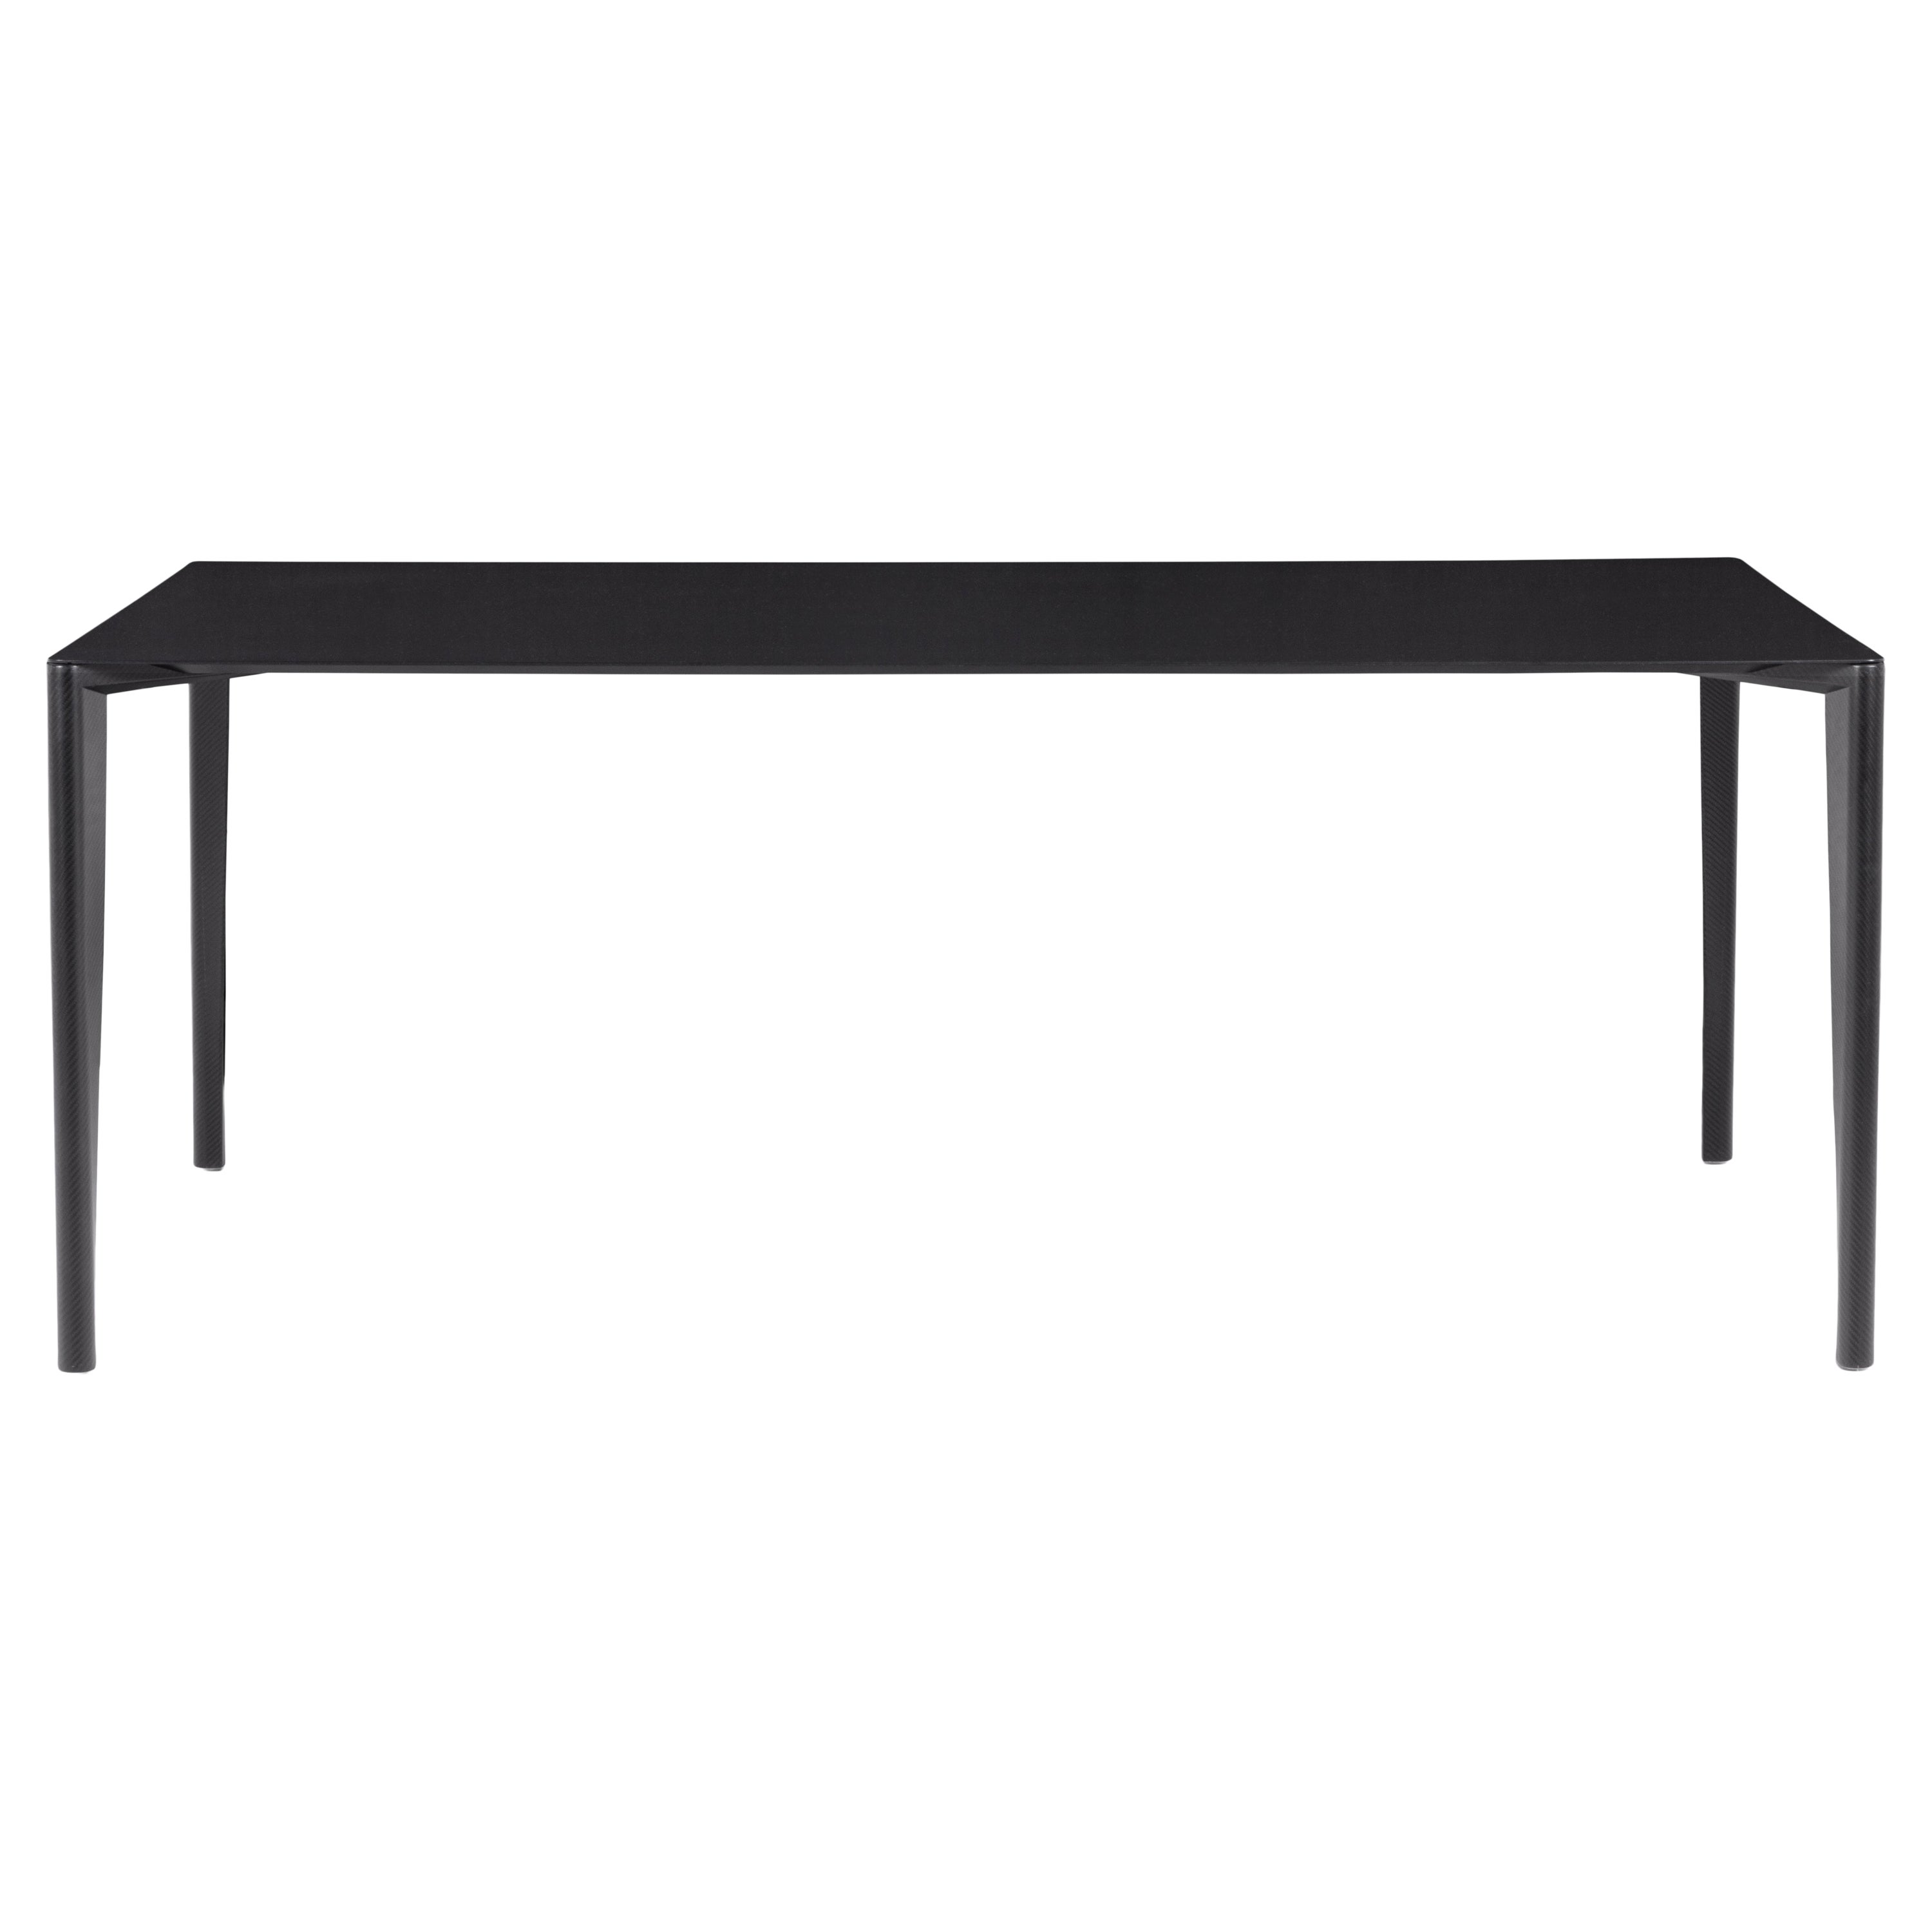 Table Profilo, table de design moderne en fibre de carbone, fabriquée en Italie